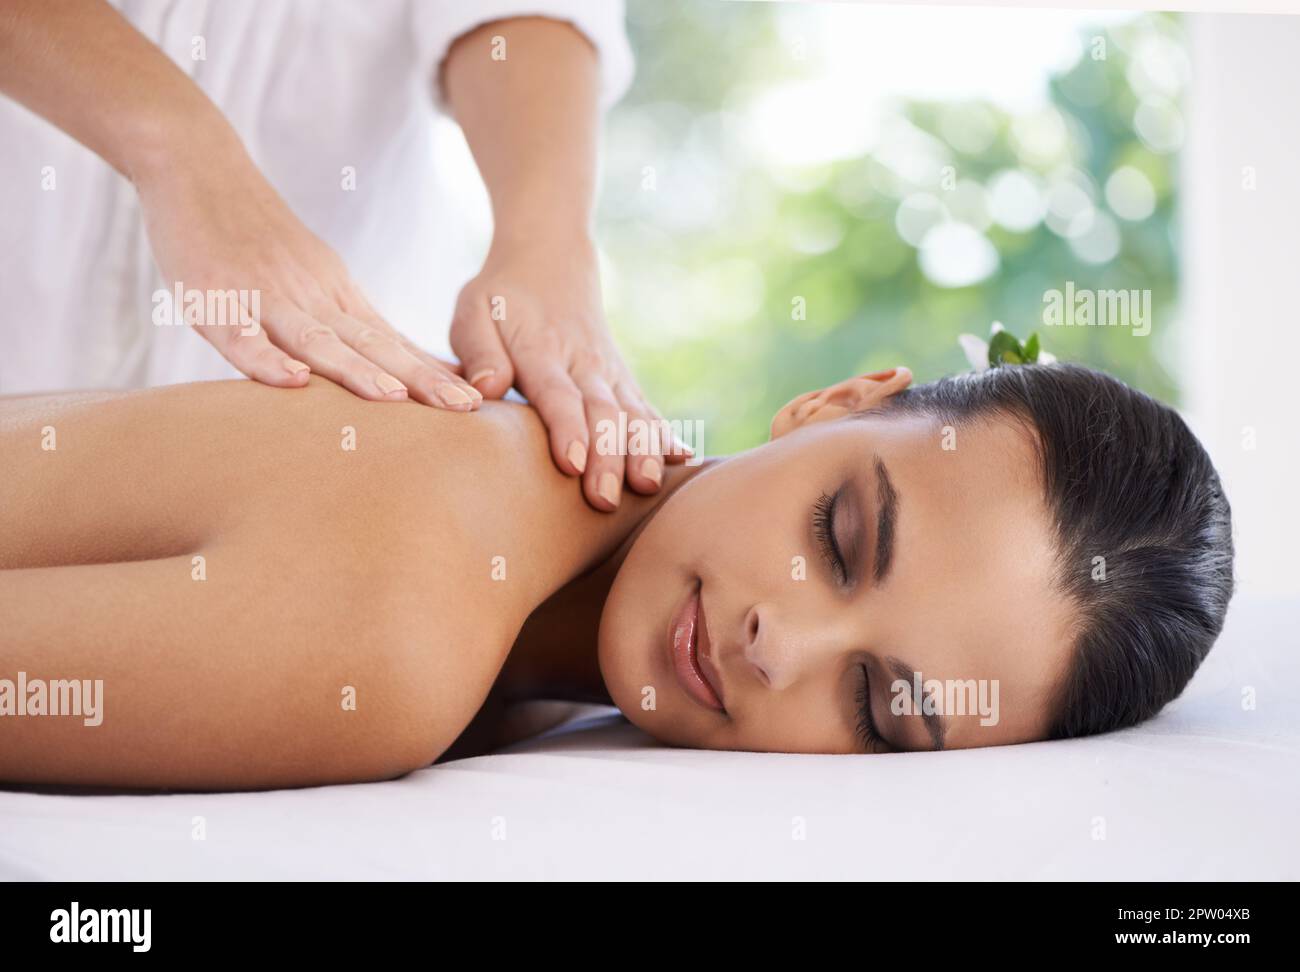 La vie ne s'améliore pas. une jeune femme bénéficiant d'un massage au spa Banque D'Images